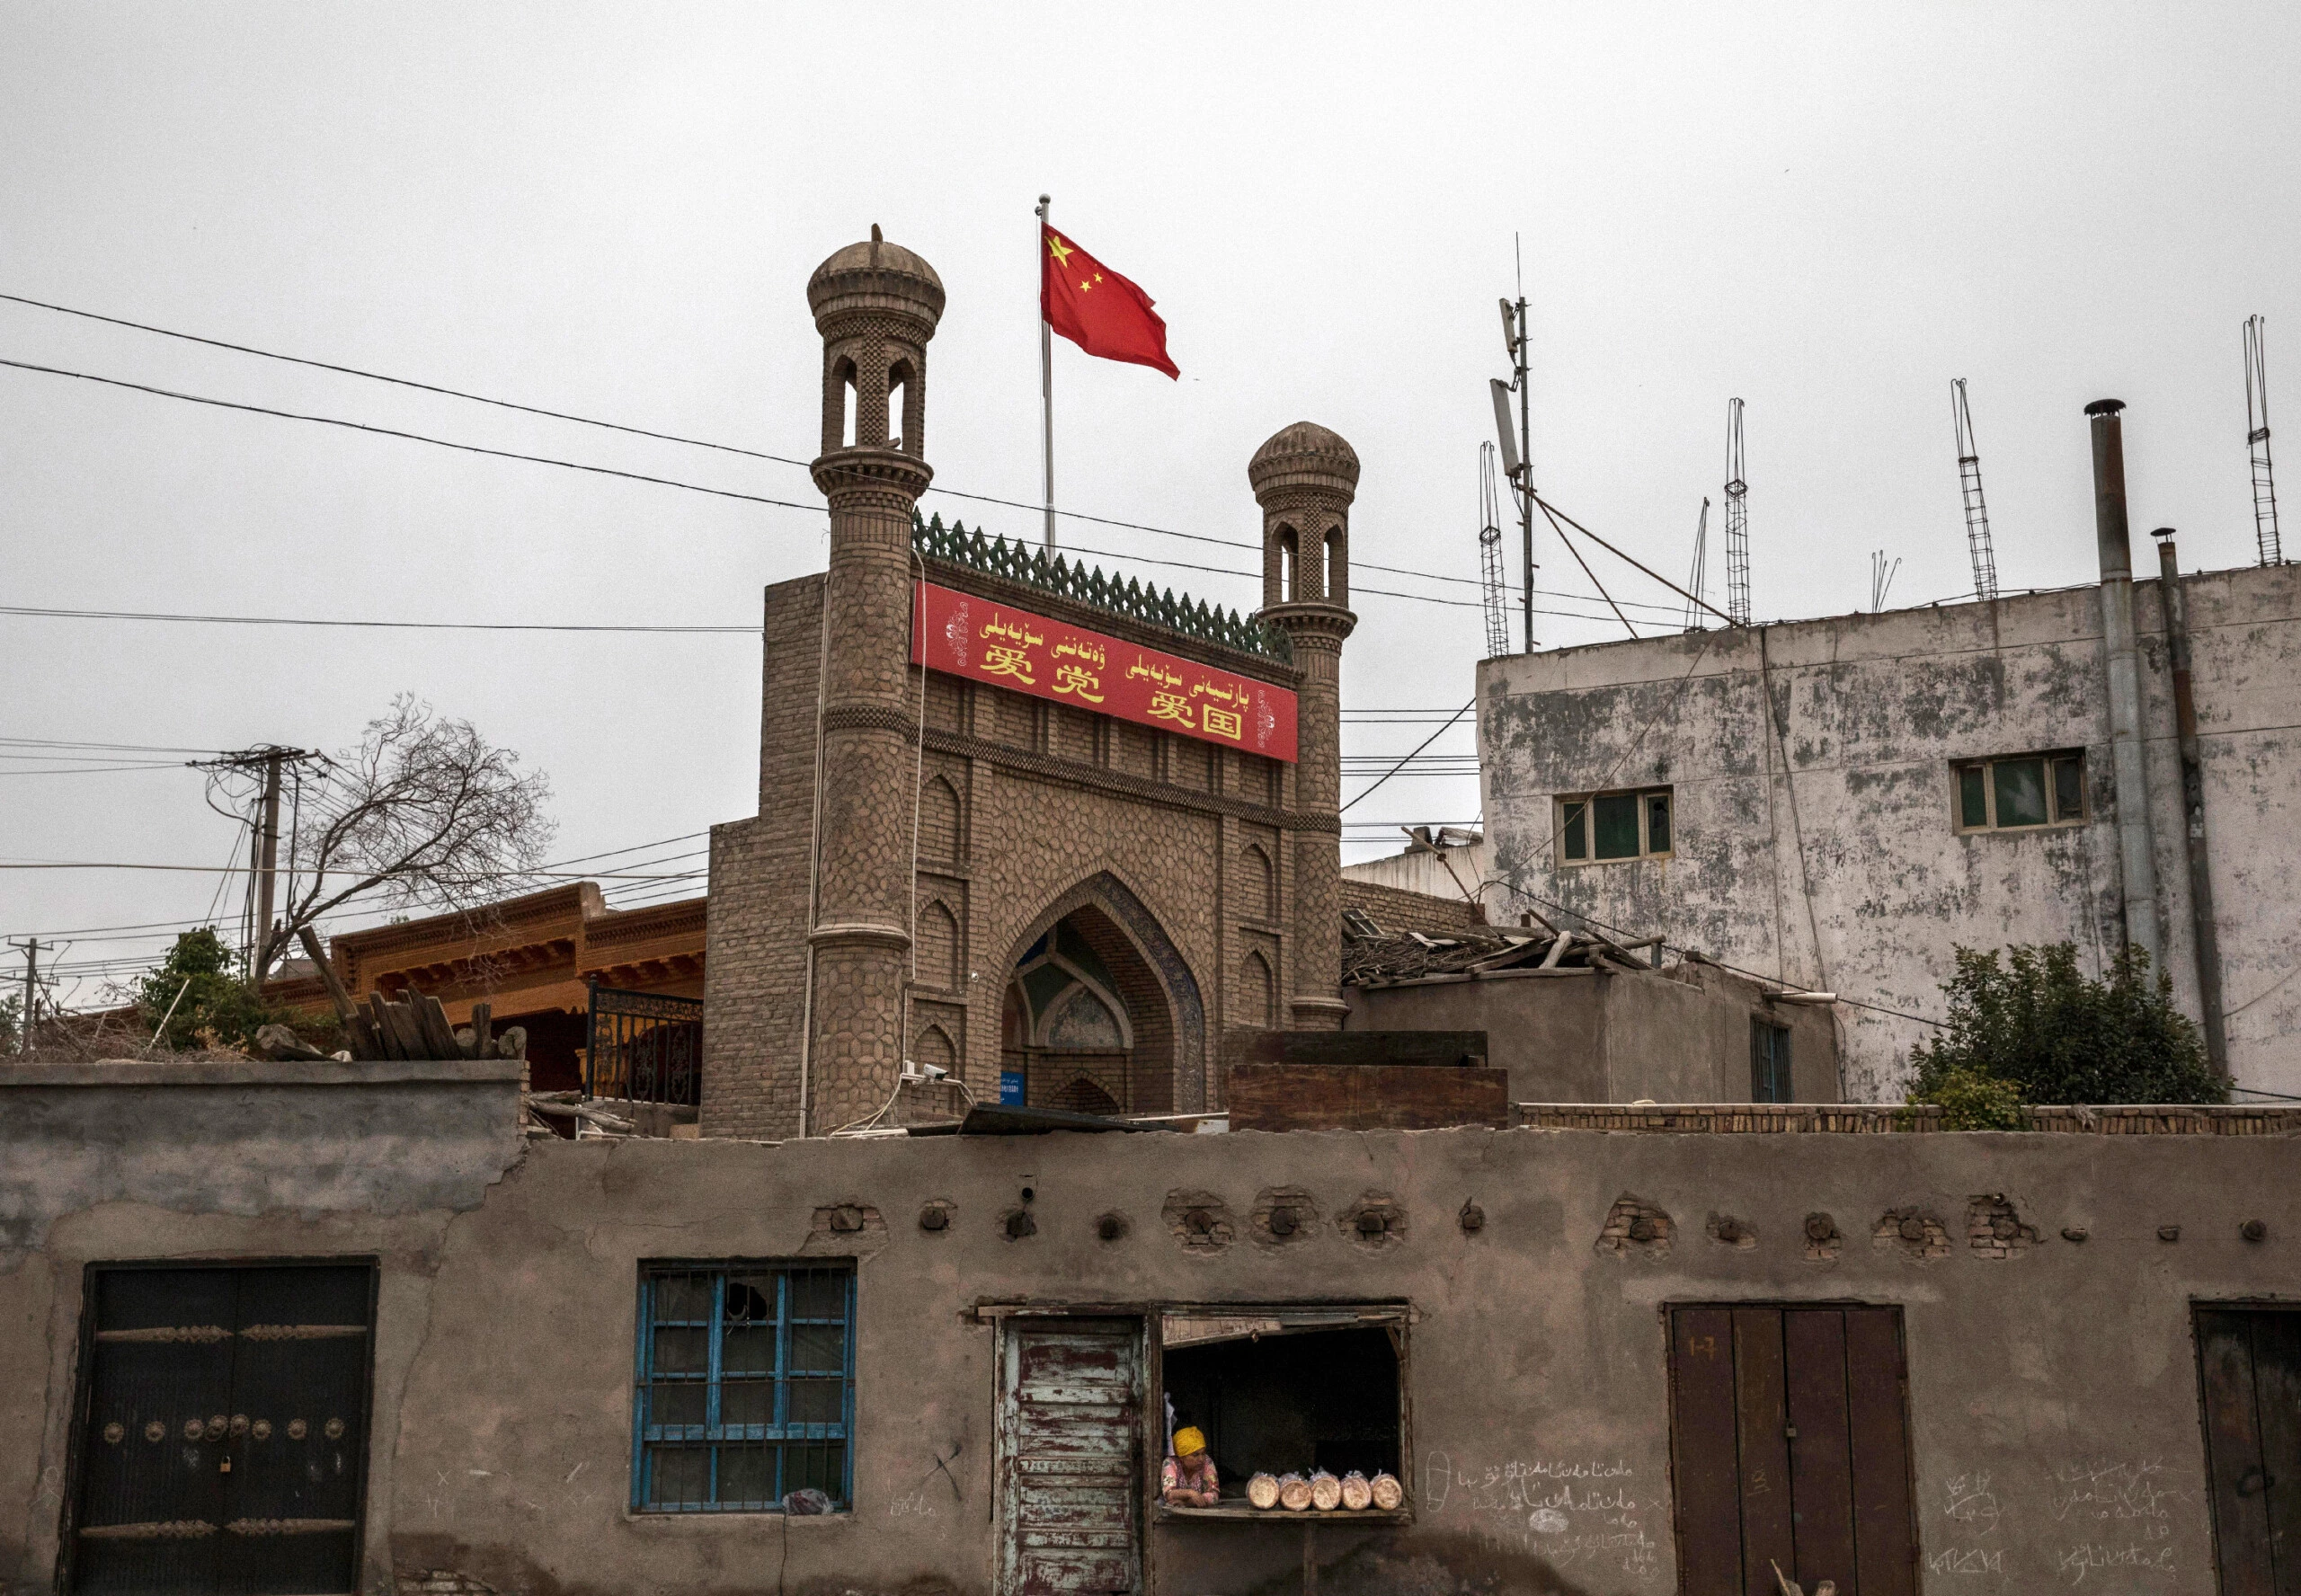 Uma bandeira chinesa tremula sobre uma mesquita local que havia sido fechada pelas autoridades, enquanto uma mulher de etnia uigur vende pão em sua padaria, em 28 de junho de 2017, na cidade antiga de Kashgar, no extremo oeste da província de Xingjiang, na China.